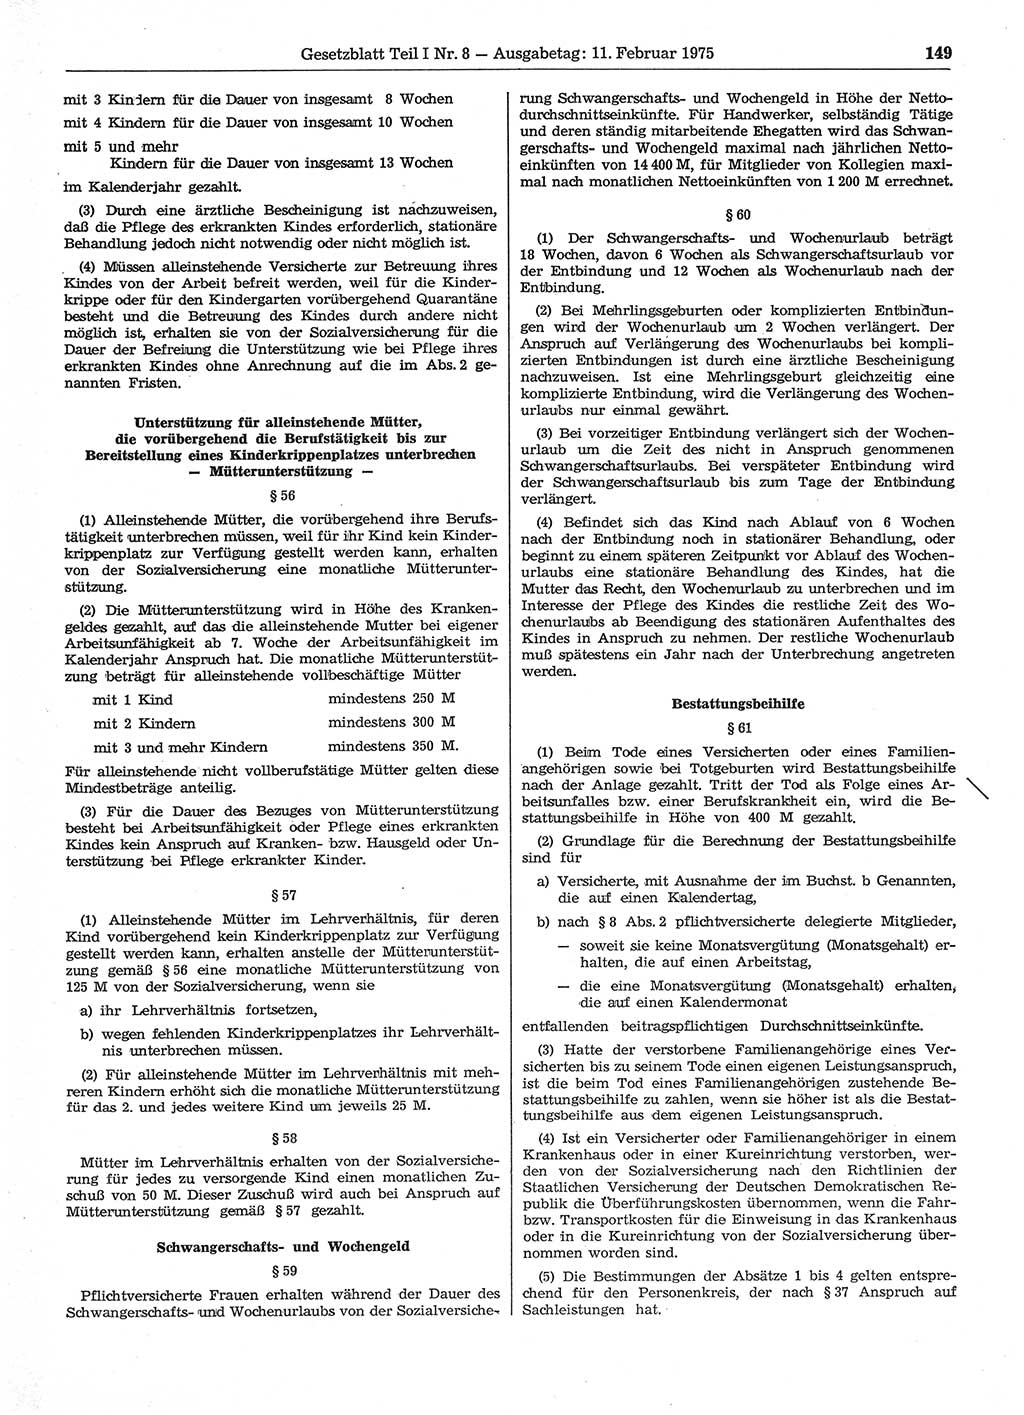 Gesetzblatt (GBl.) der Deutschen Demokratischen Republik (DDR) Teil Ⅰ 1975, Seite 149 (GBl. DDR Ⅰ 1975, S. 149)